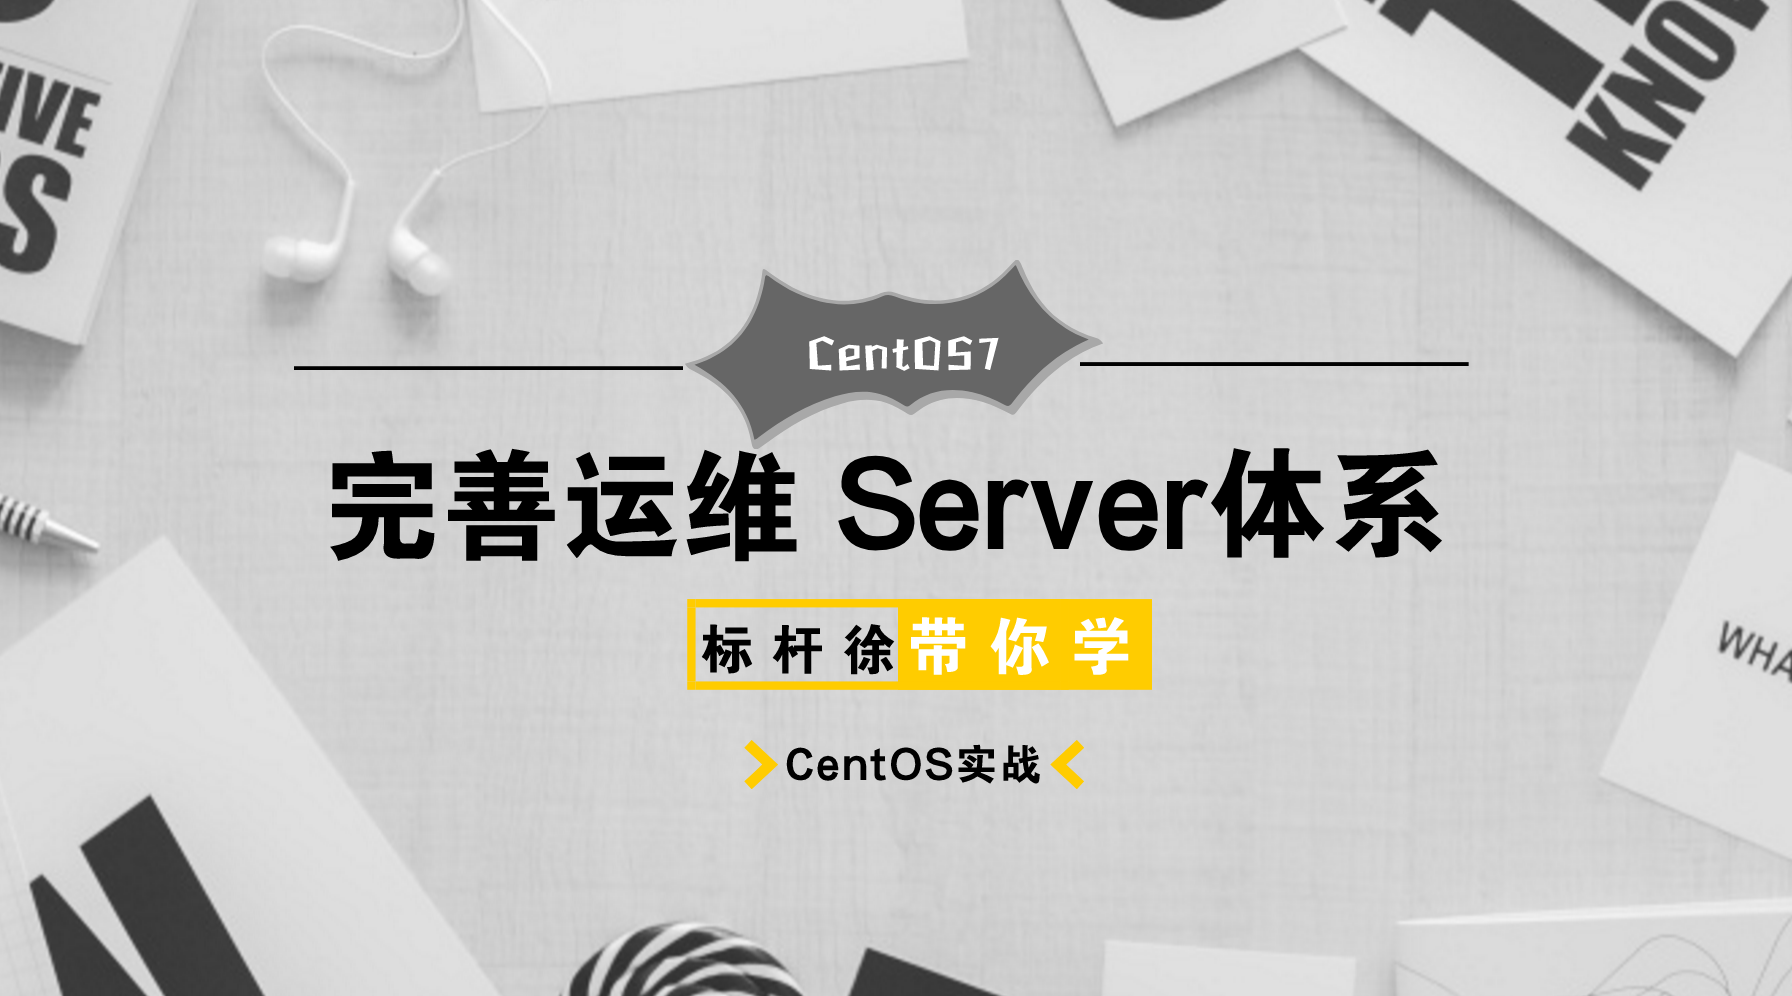 标杆徐2018 Linux自动化运维系列①: CentOS7系统应用与实践